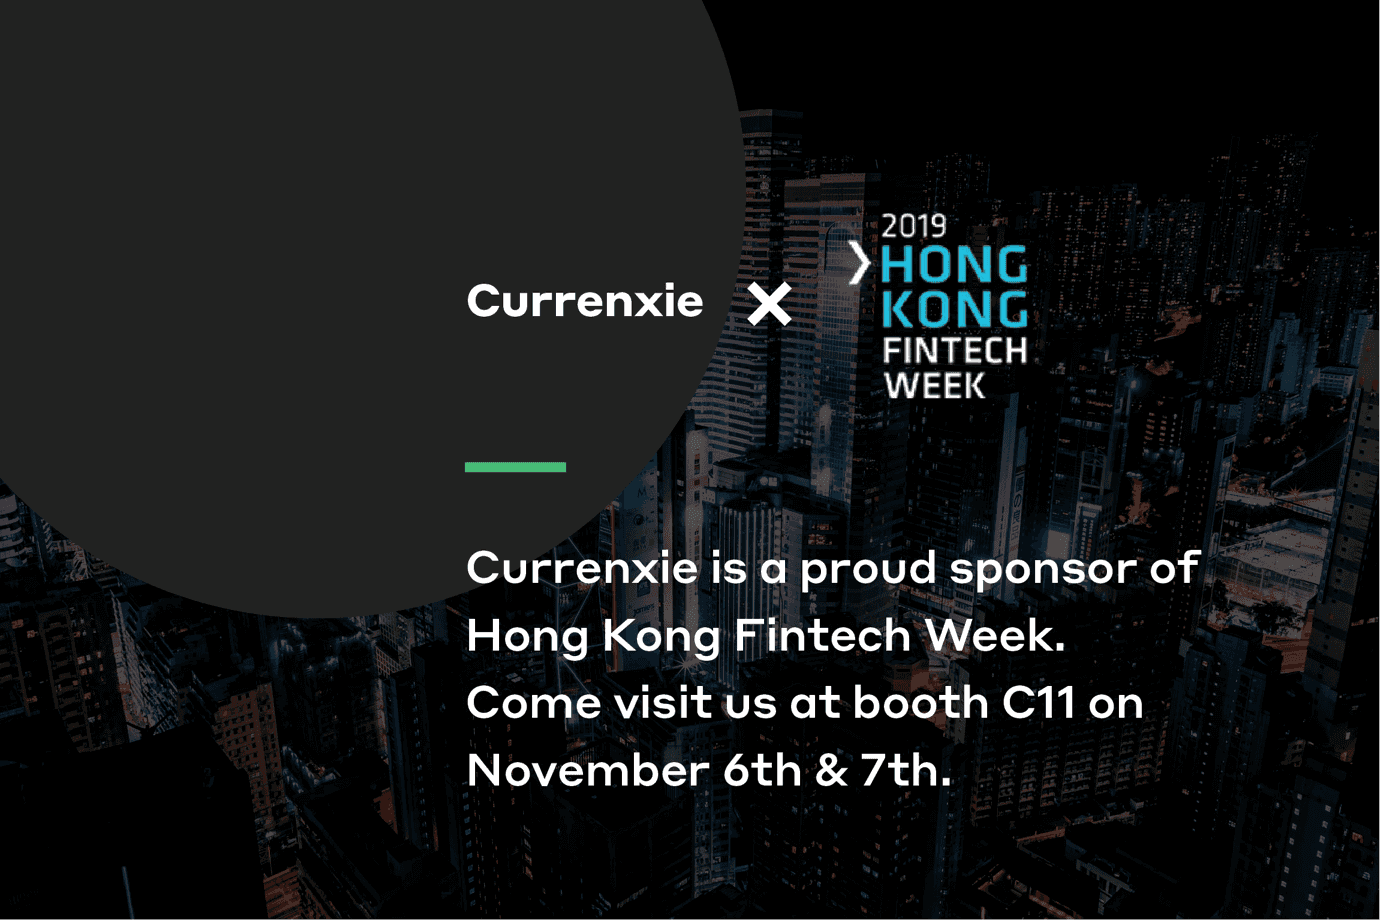 Currenxie x Hong Kong Fintech Week